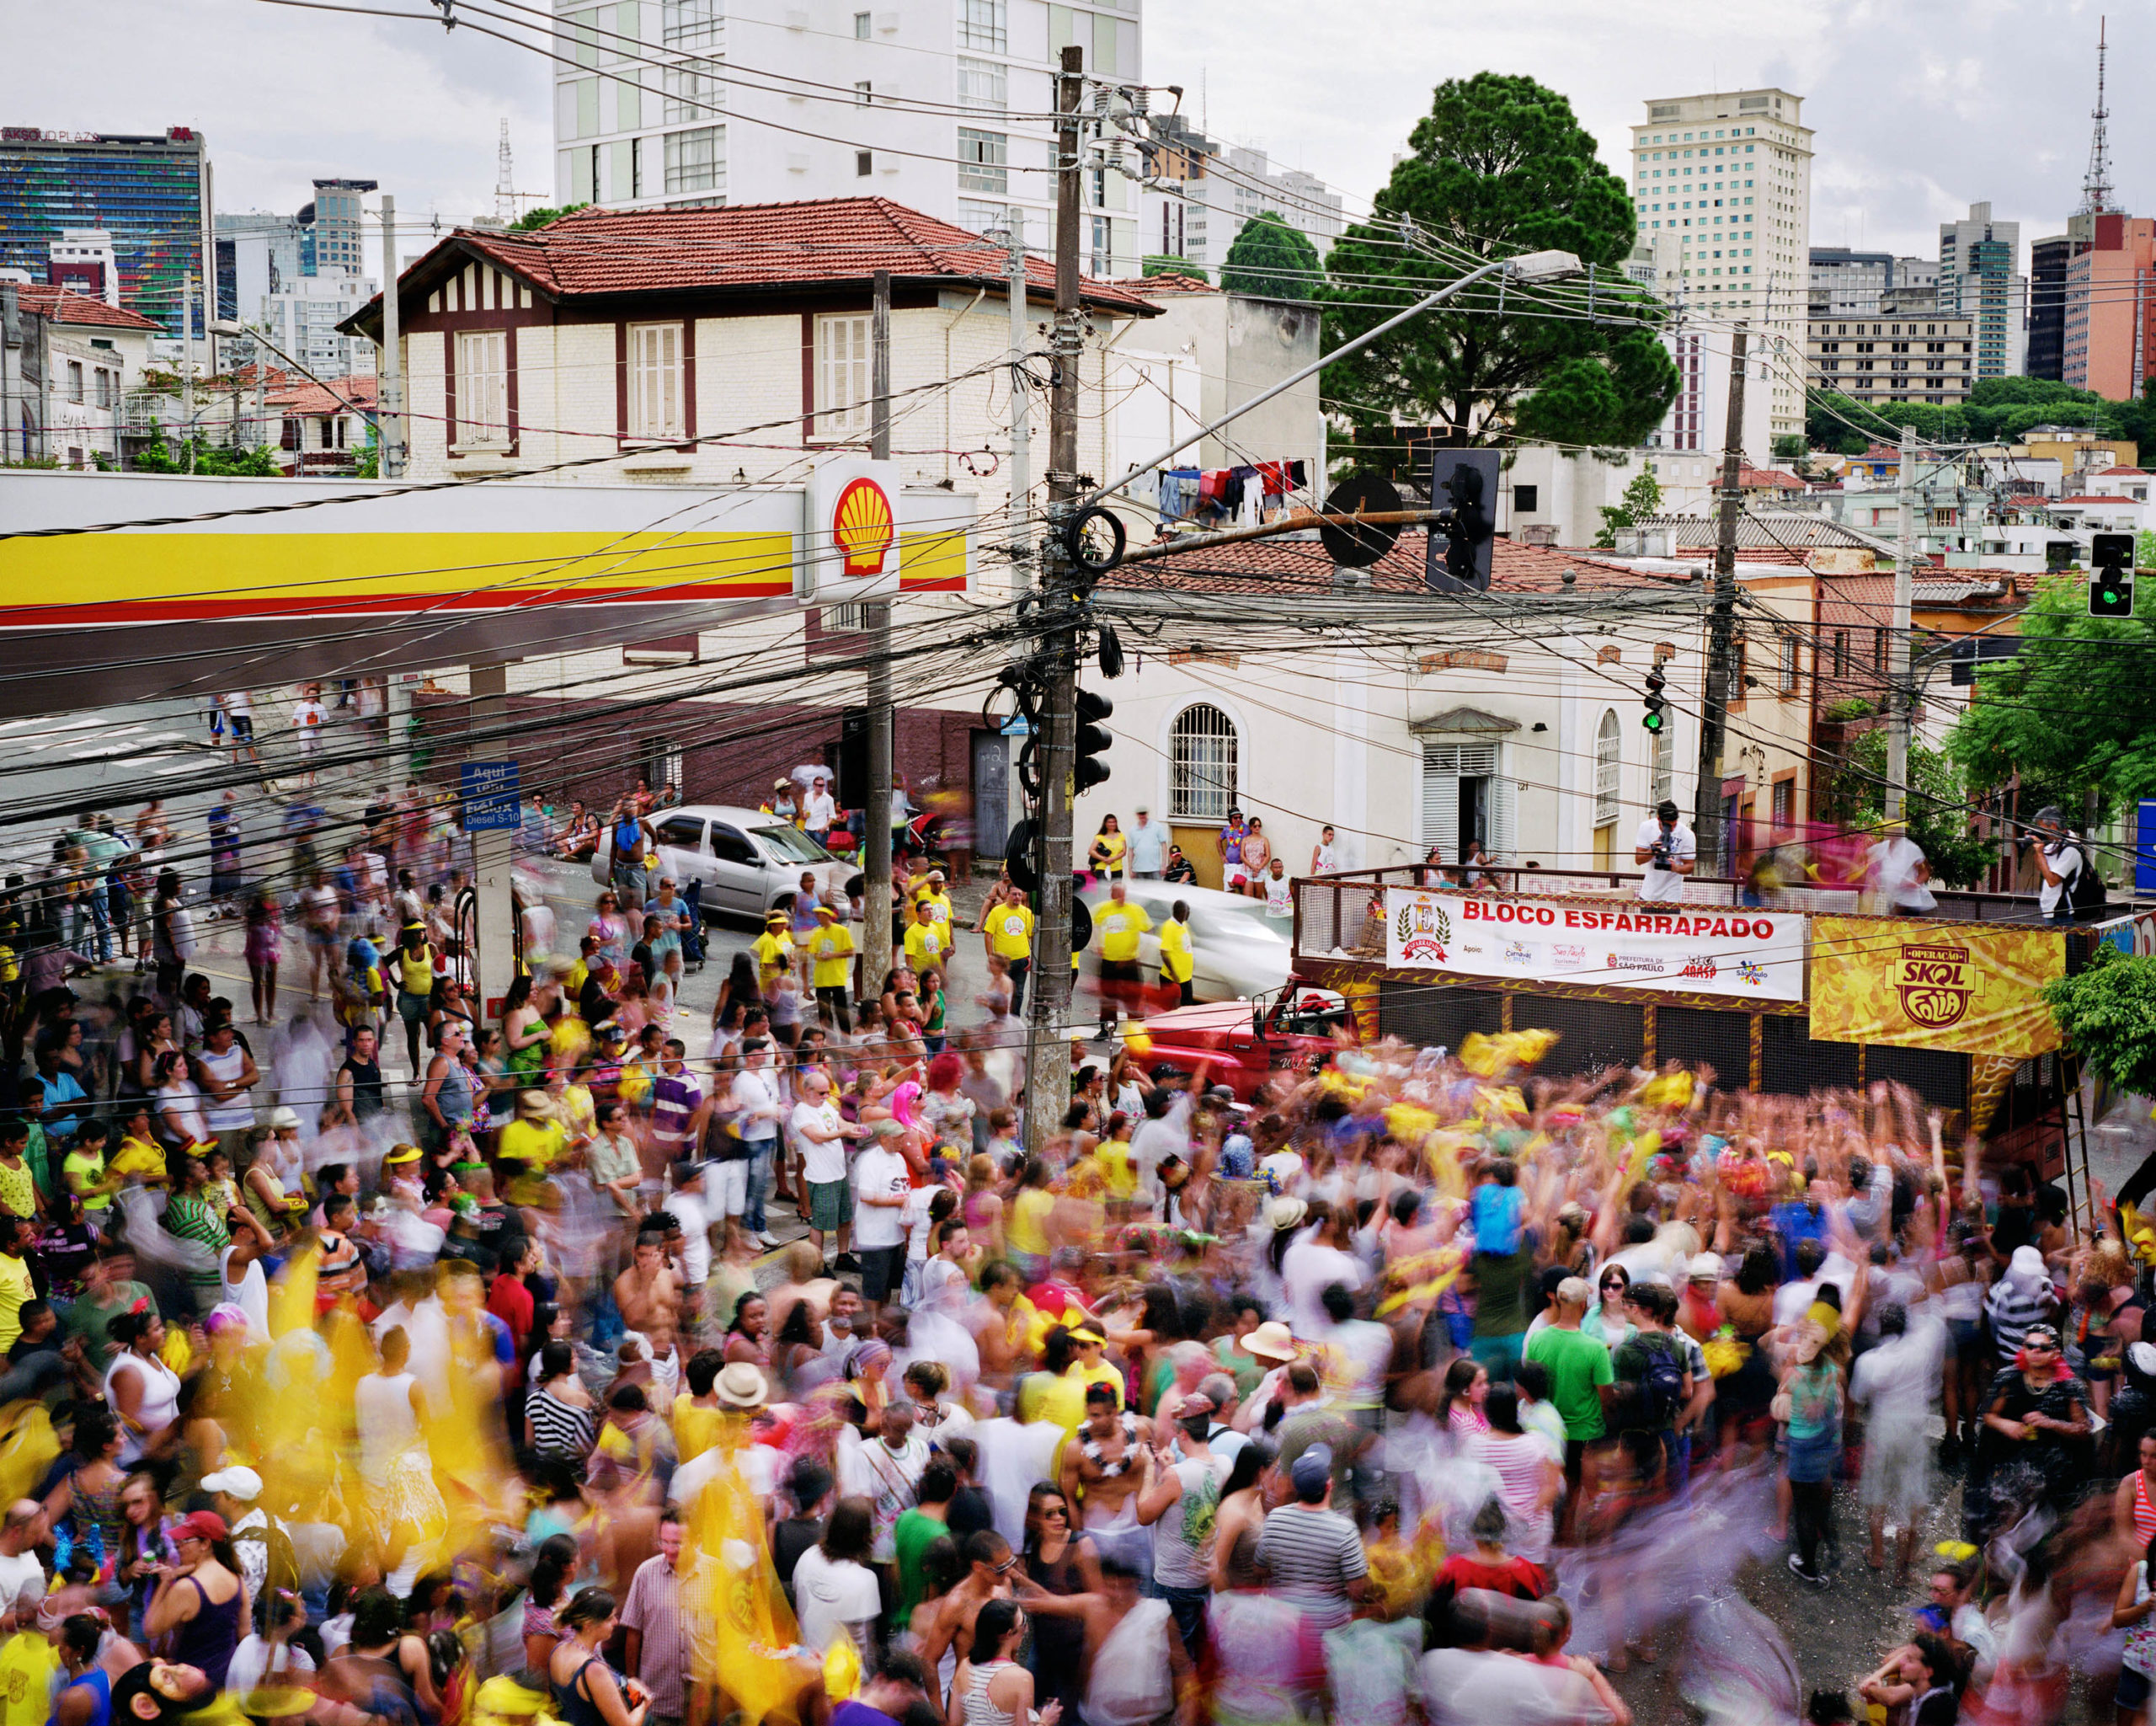 Rua Conselheiro Carrao, Se, Sao Paulo, Brazil (Carnaval)